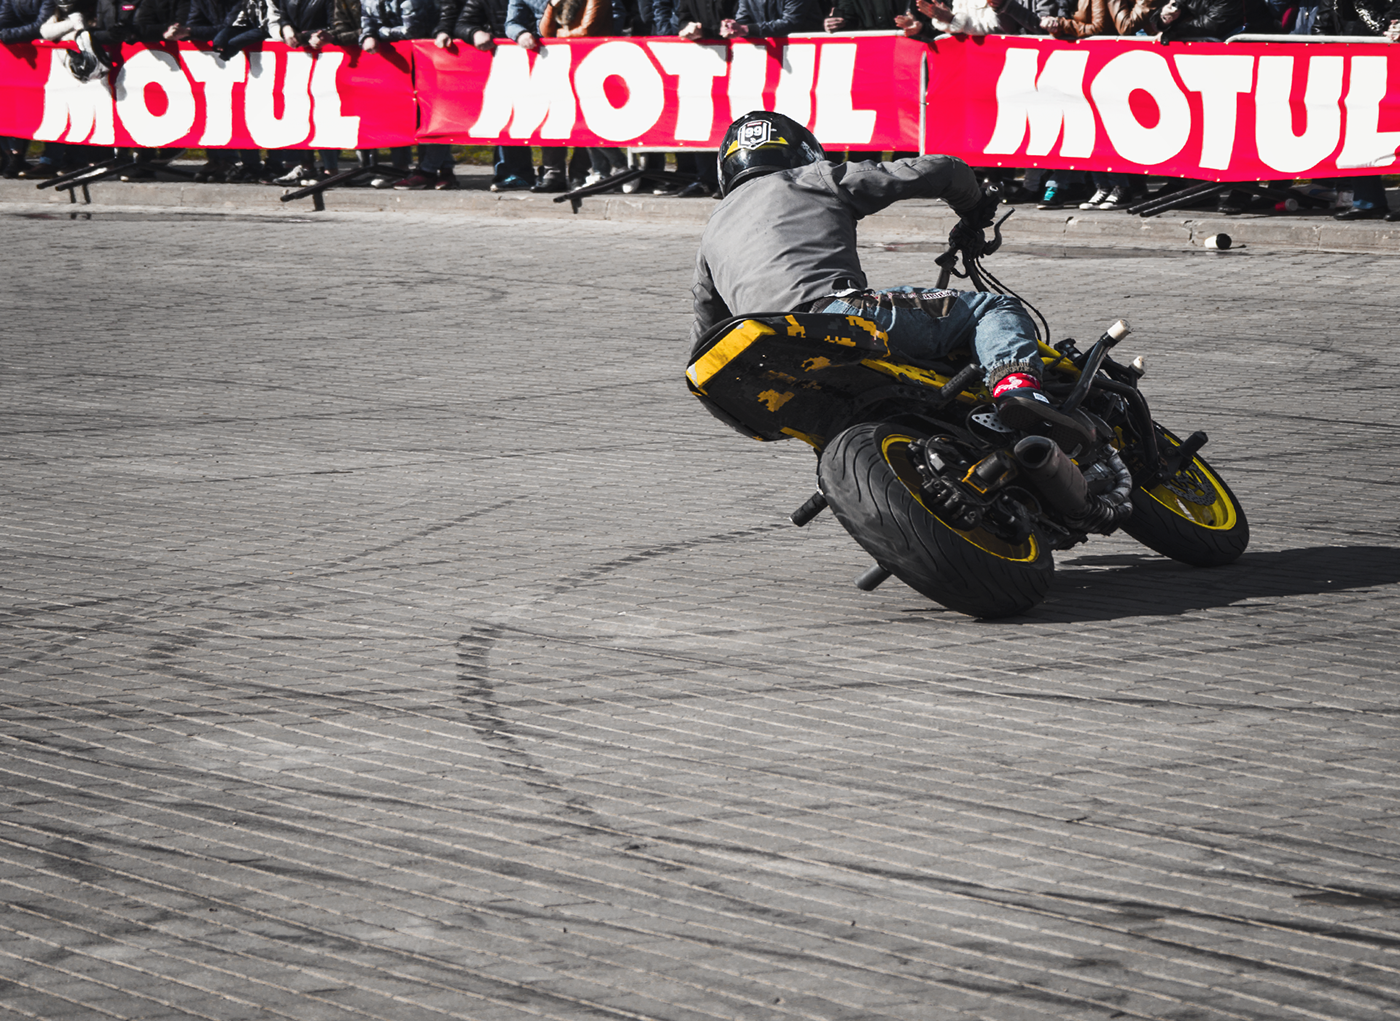 stunt moto rider biker Bike motorcycle Show sportbike Opening photo